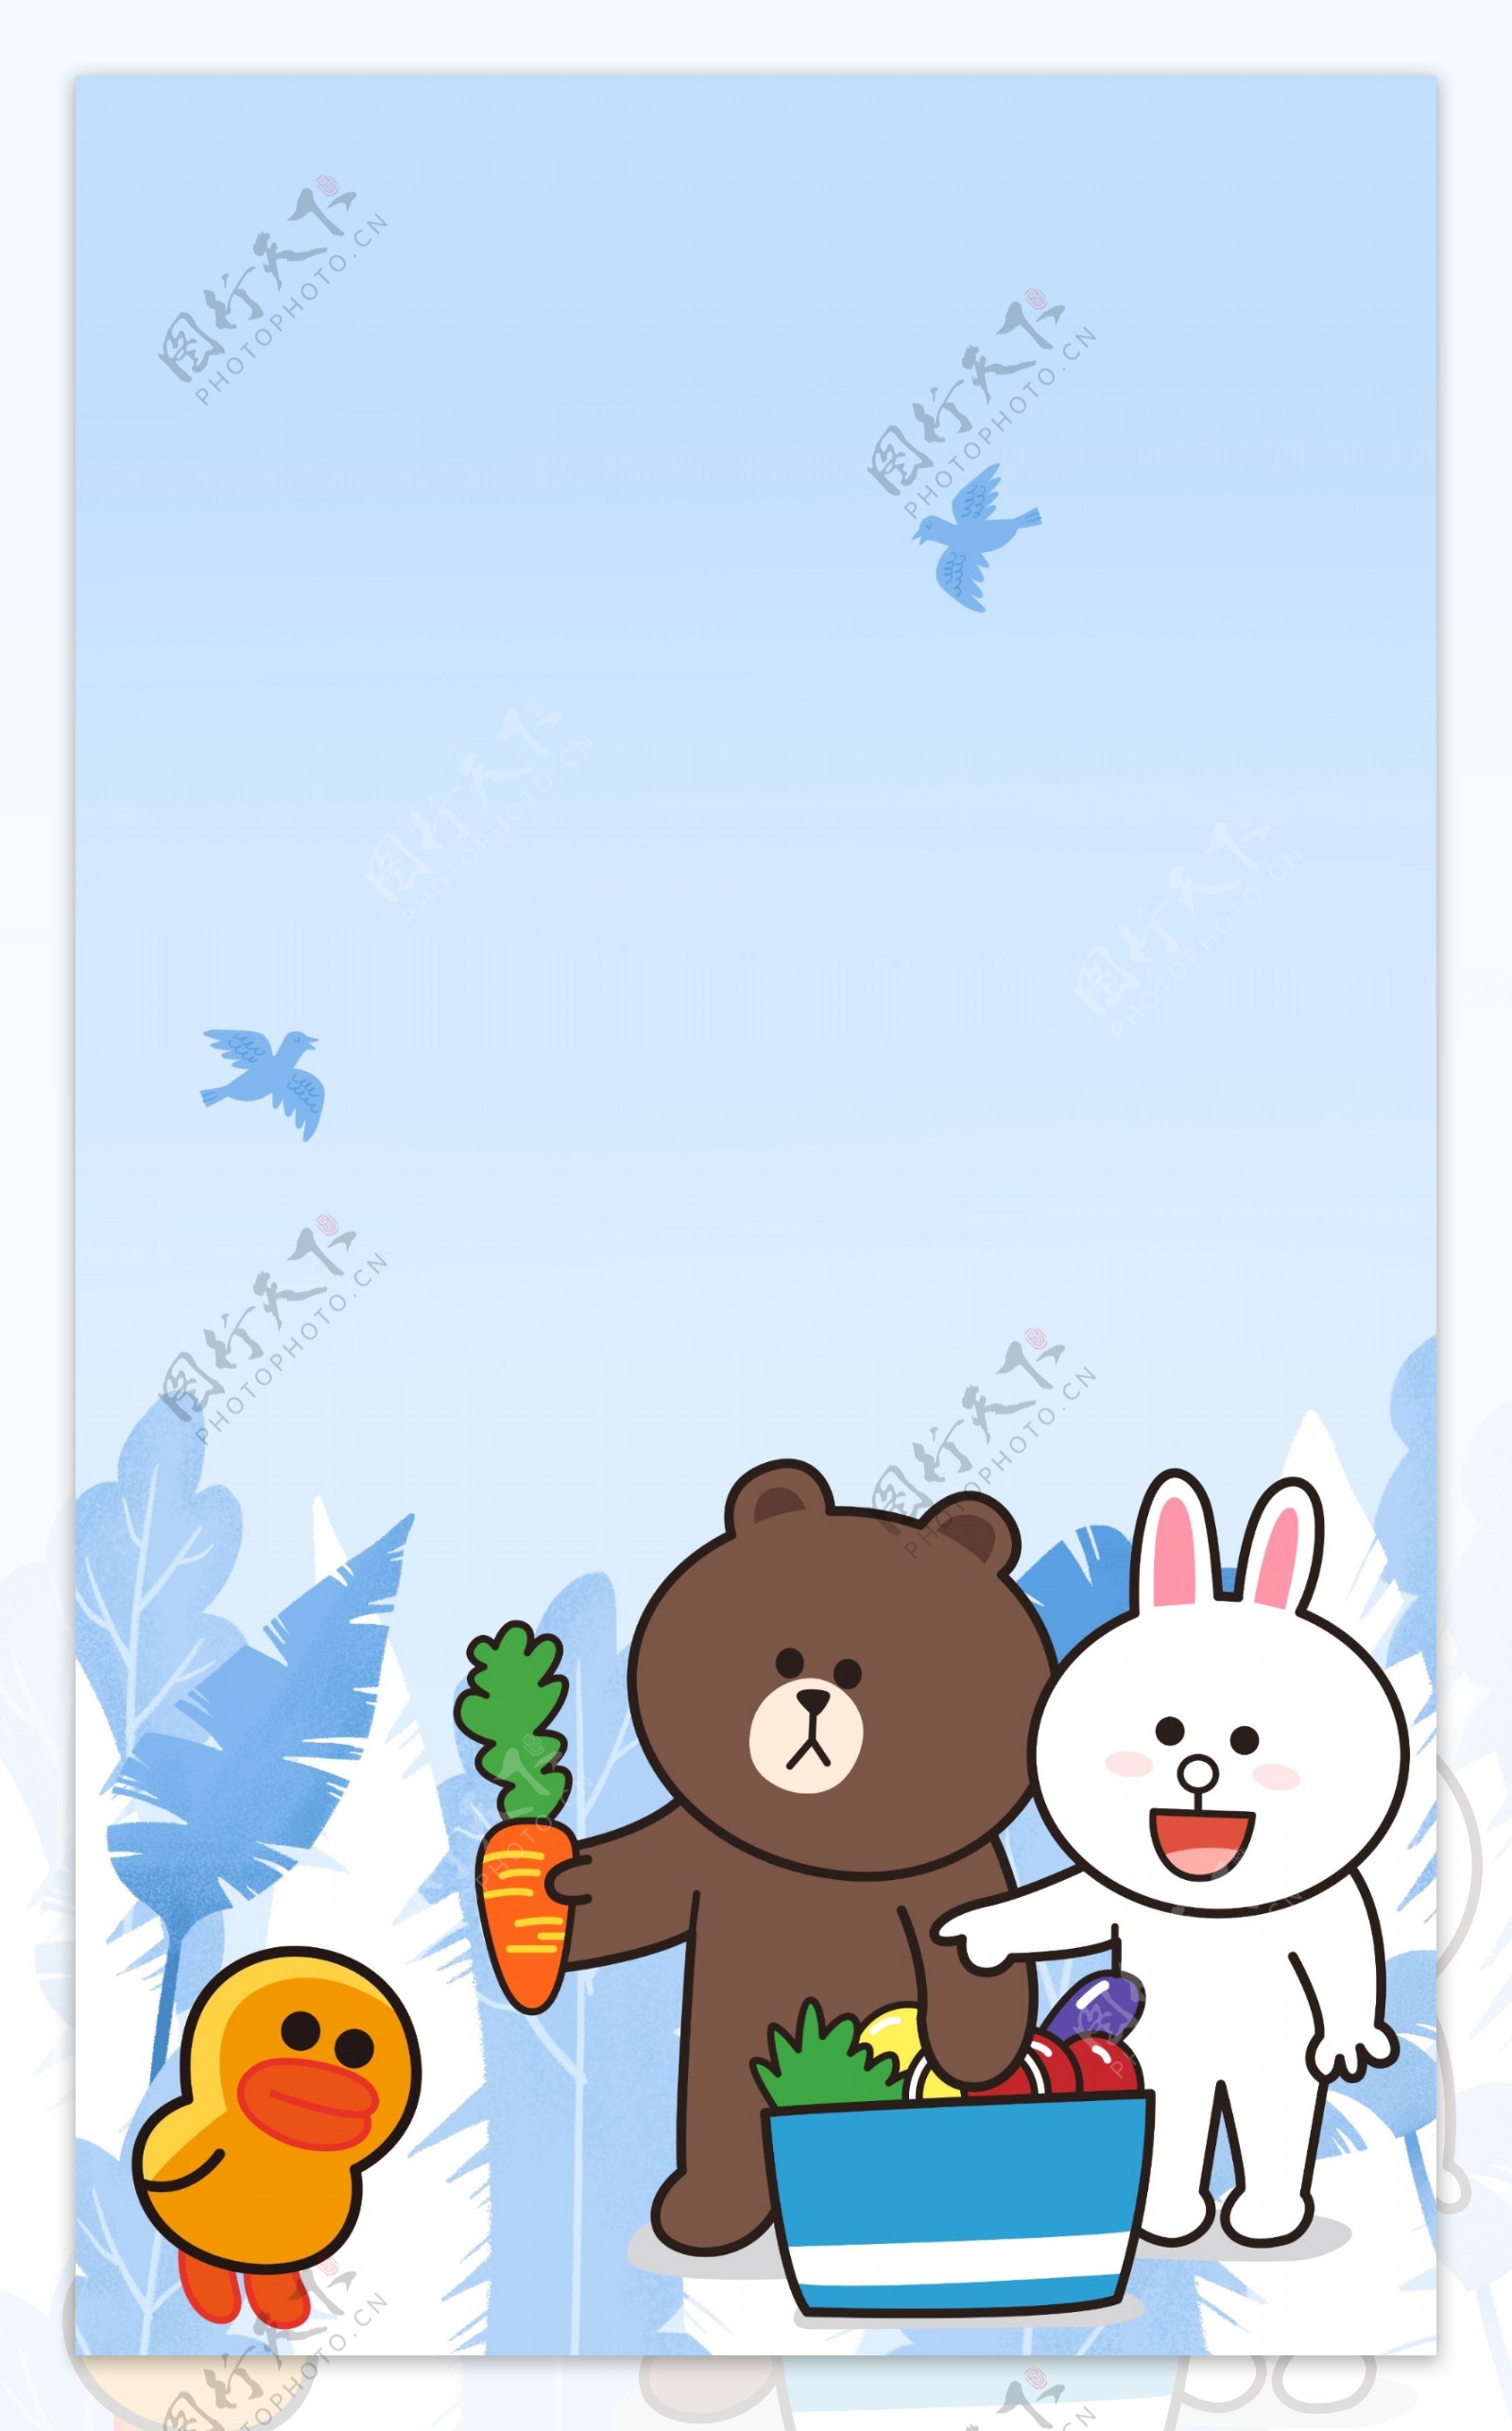 布朗熊和可妮兔